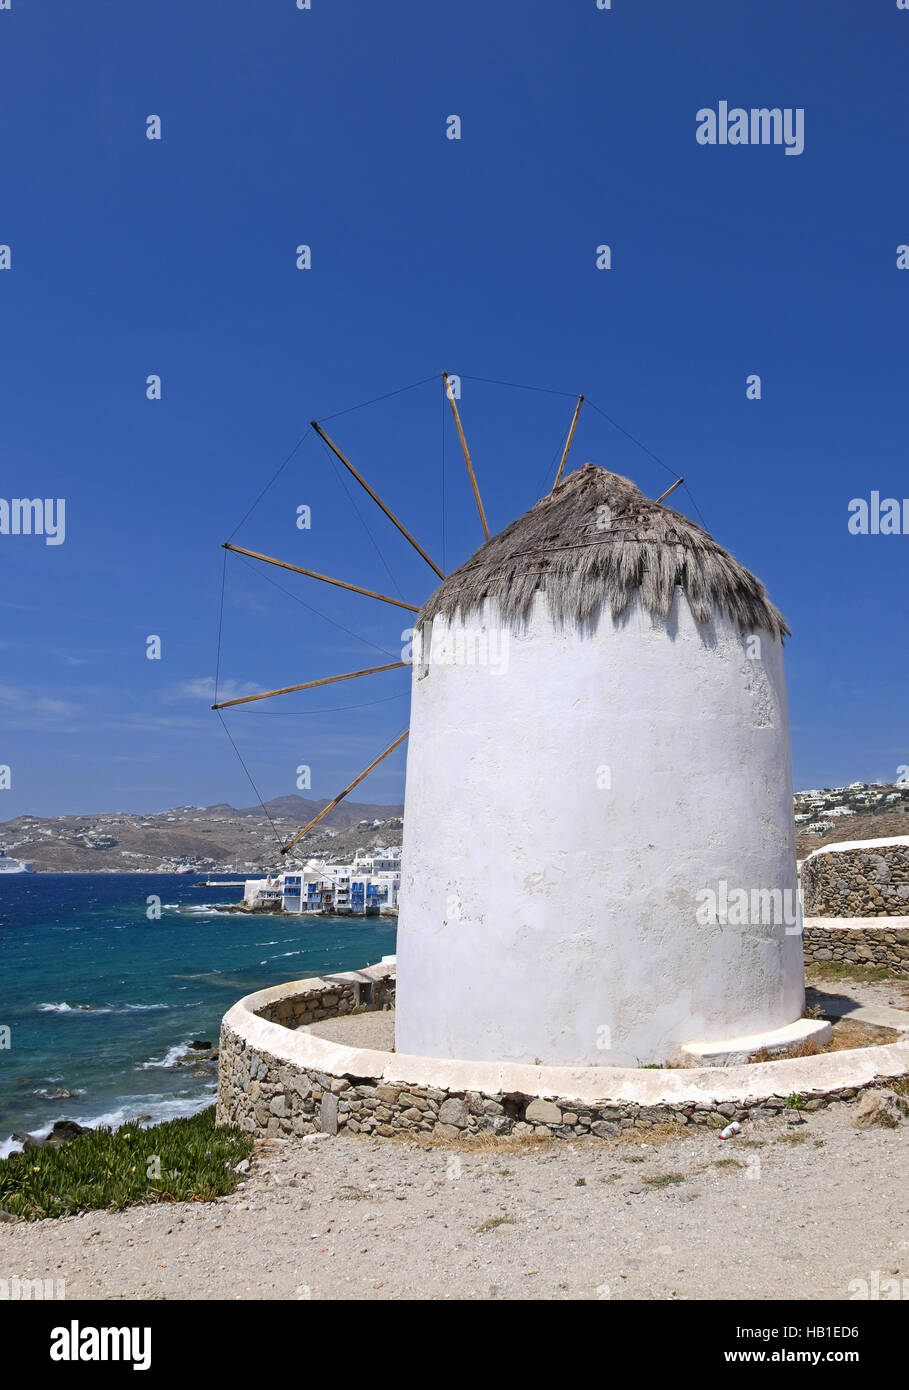 Windmill in Mykonos Stock Photo